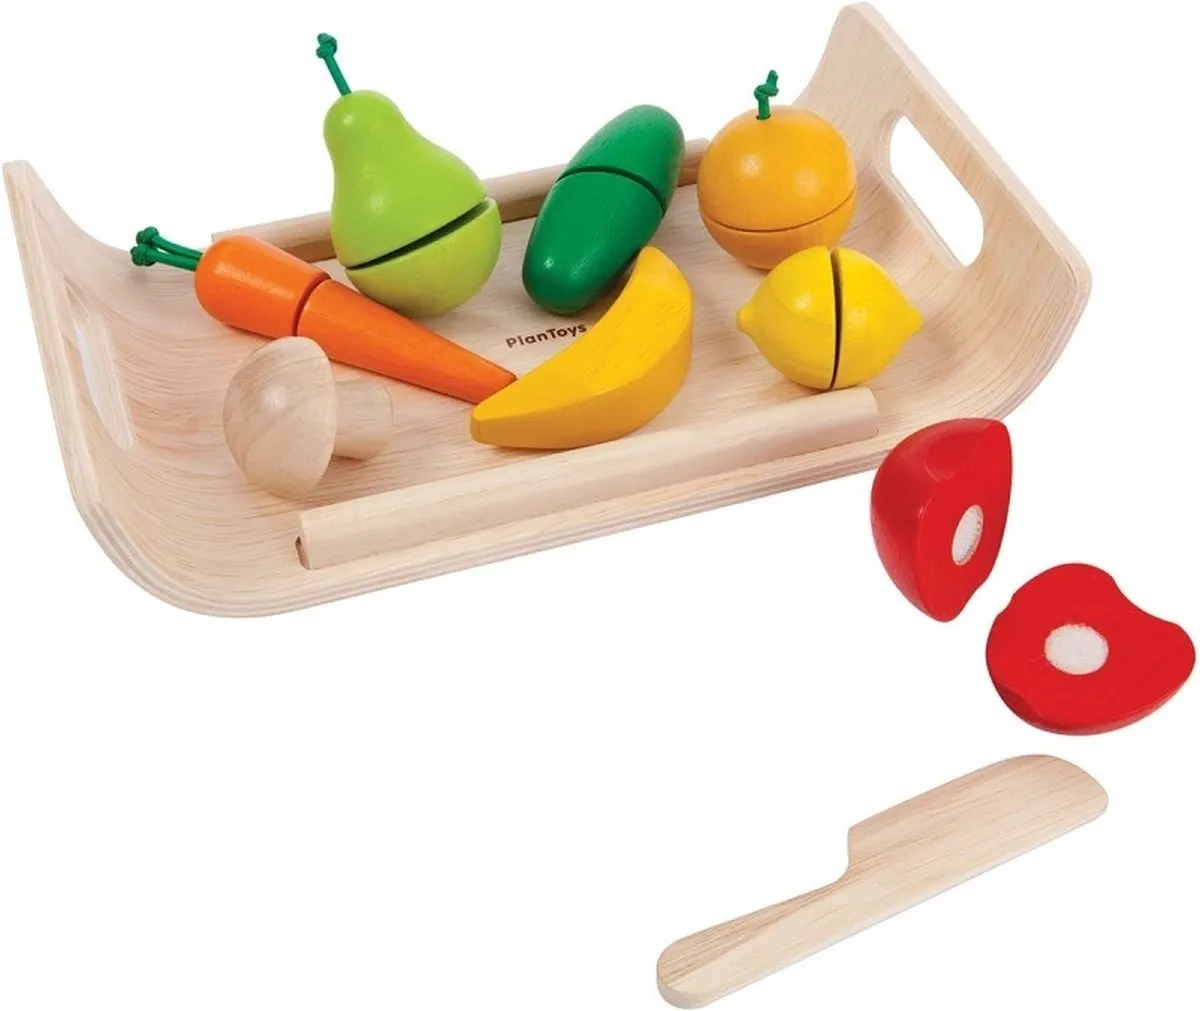 PlanToys Houten Speelgoed Assortiment groenten en fruit speelgoed